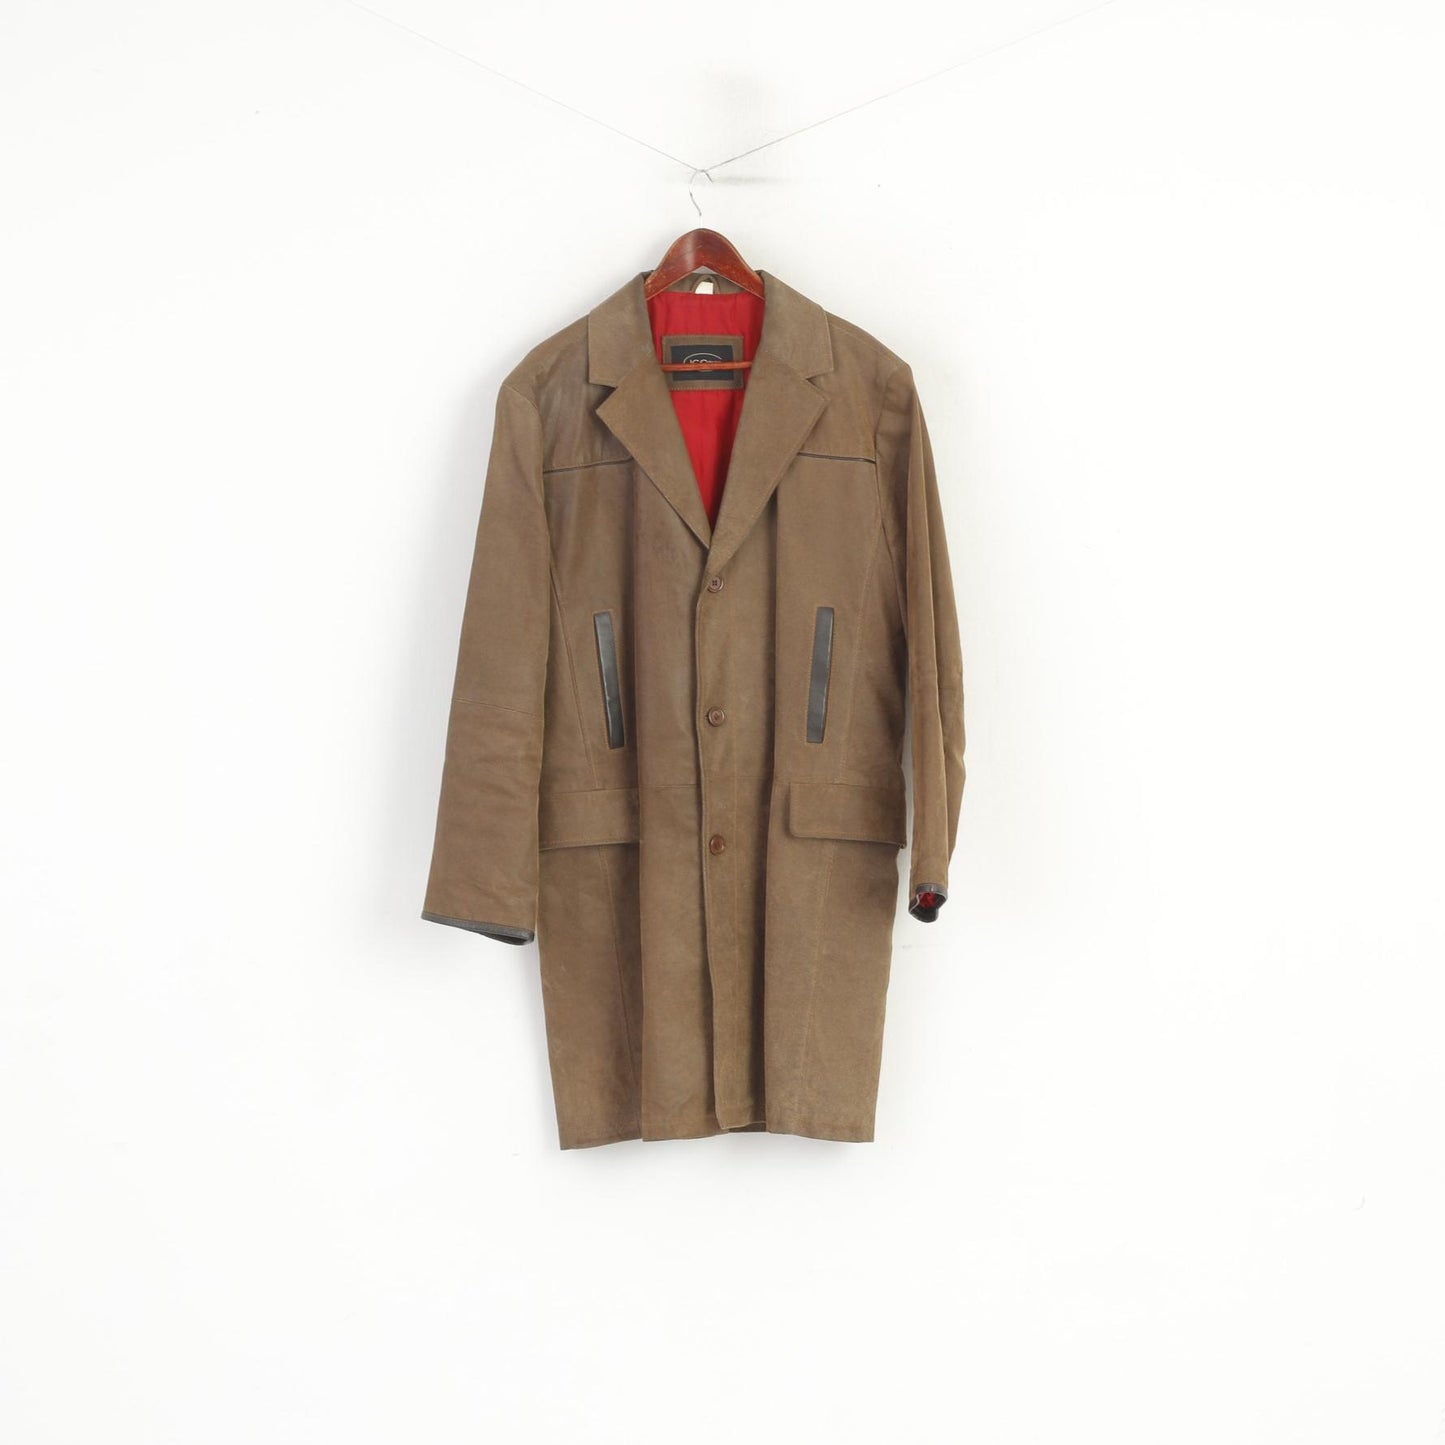 JC Collection hommes 54 44 L manteau en cuir marron rétro simple boutonnage doublé haut